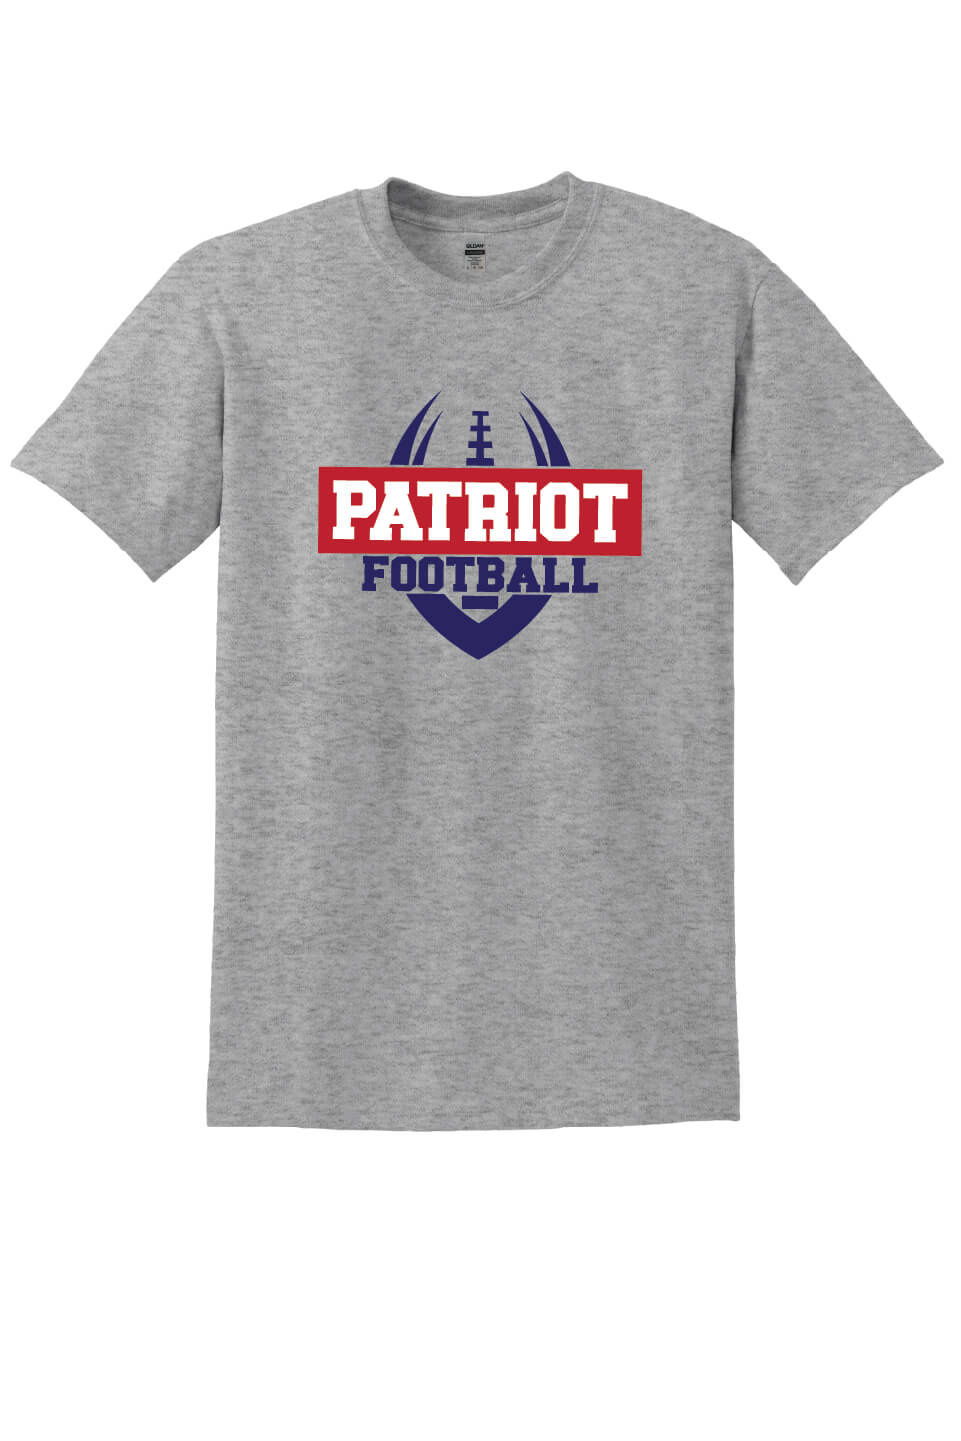 Patriot Football Short Sleeve T-shirt gray